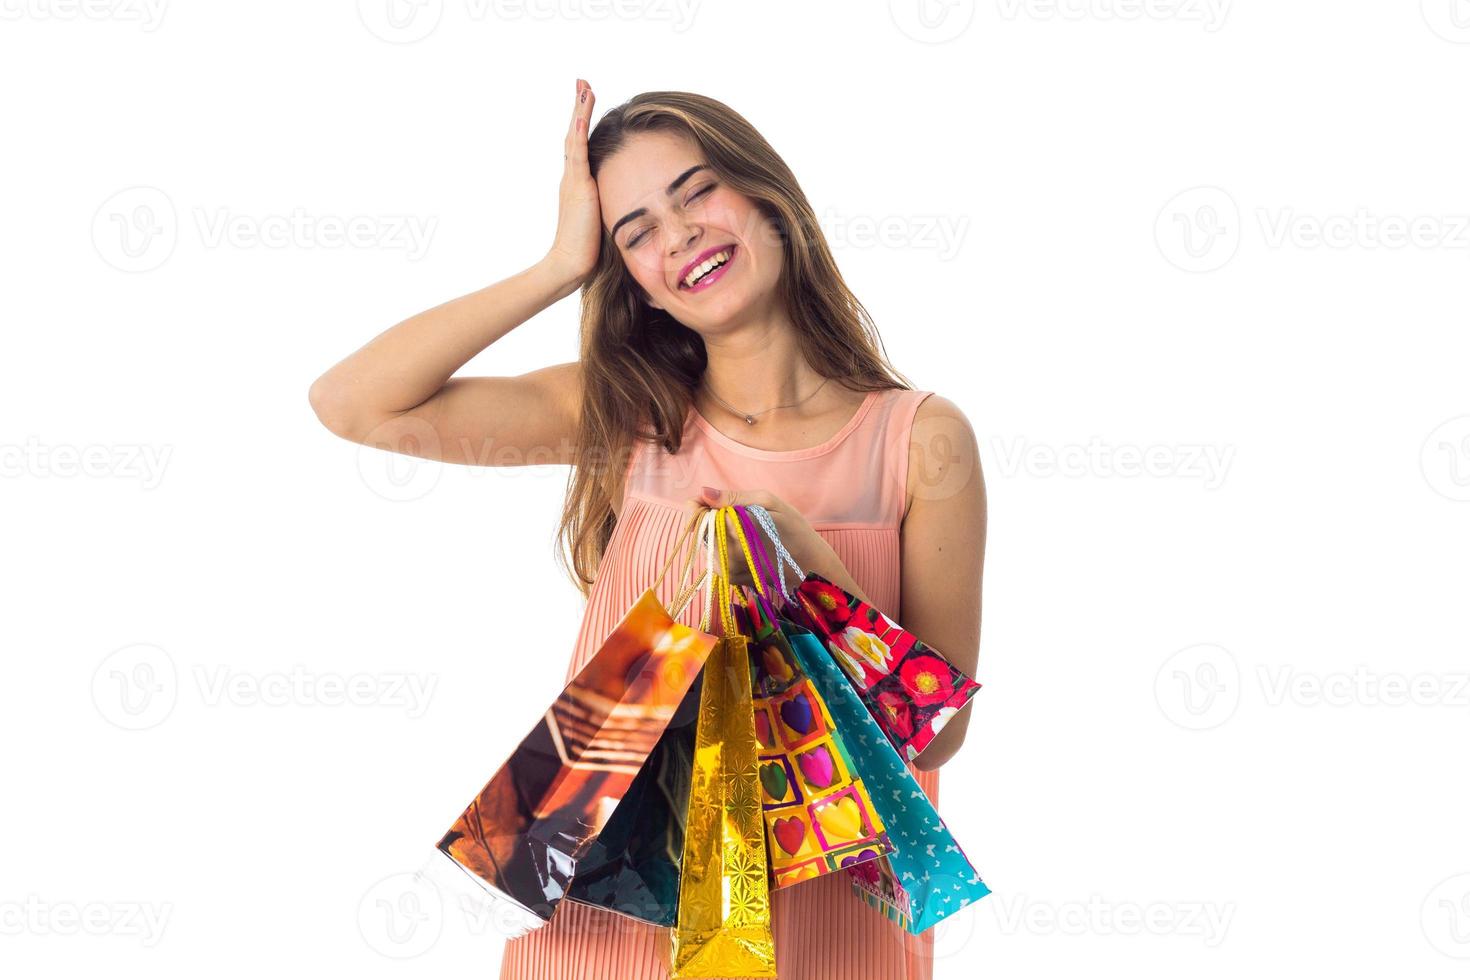 jovem fechou os olhos sorrindo e segurando sacos coloridos isolados no fundo branco foto